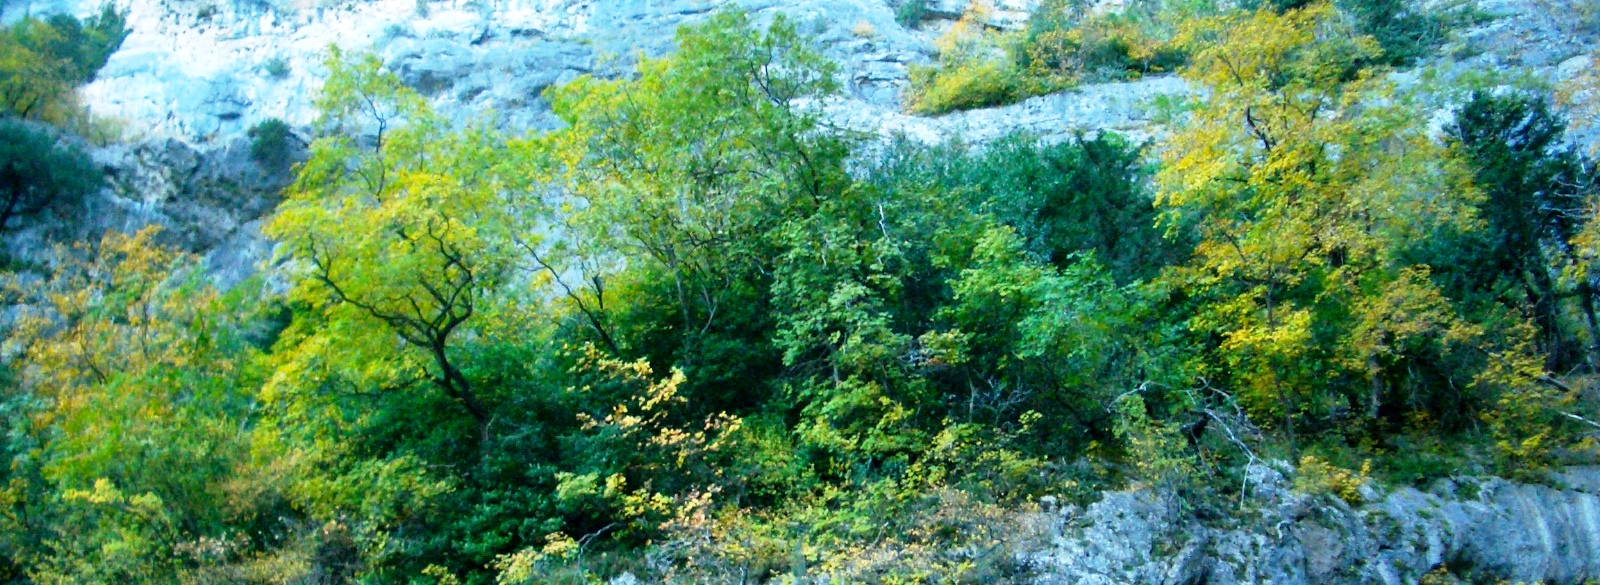 Vegetación encaramada en los estratos rocosos